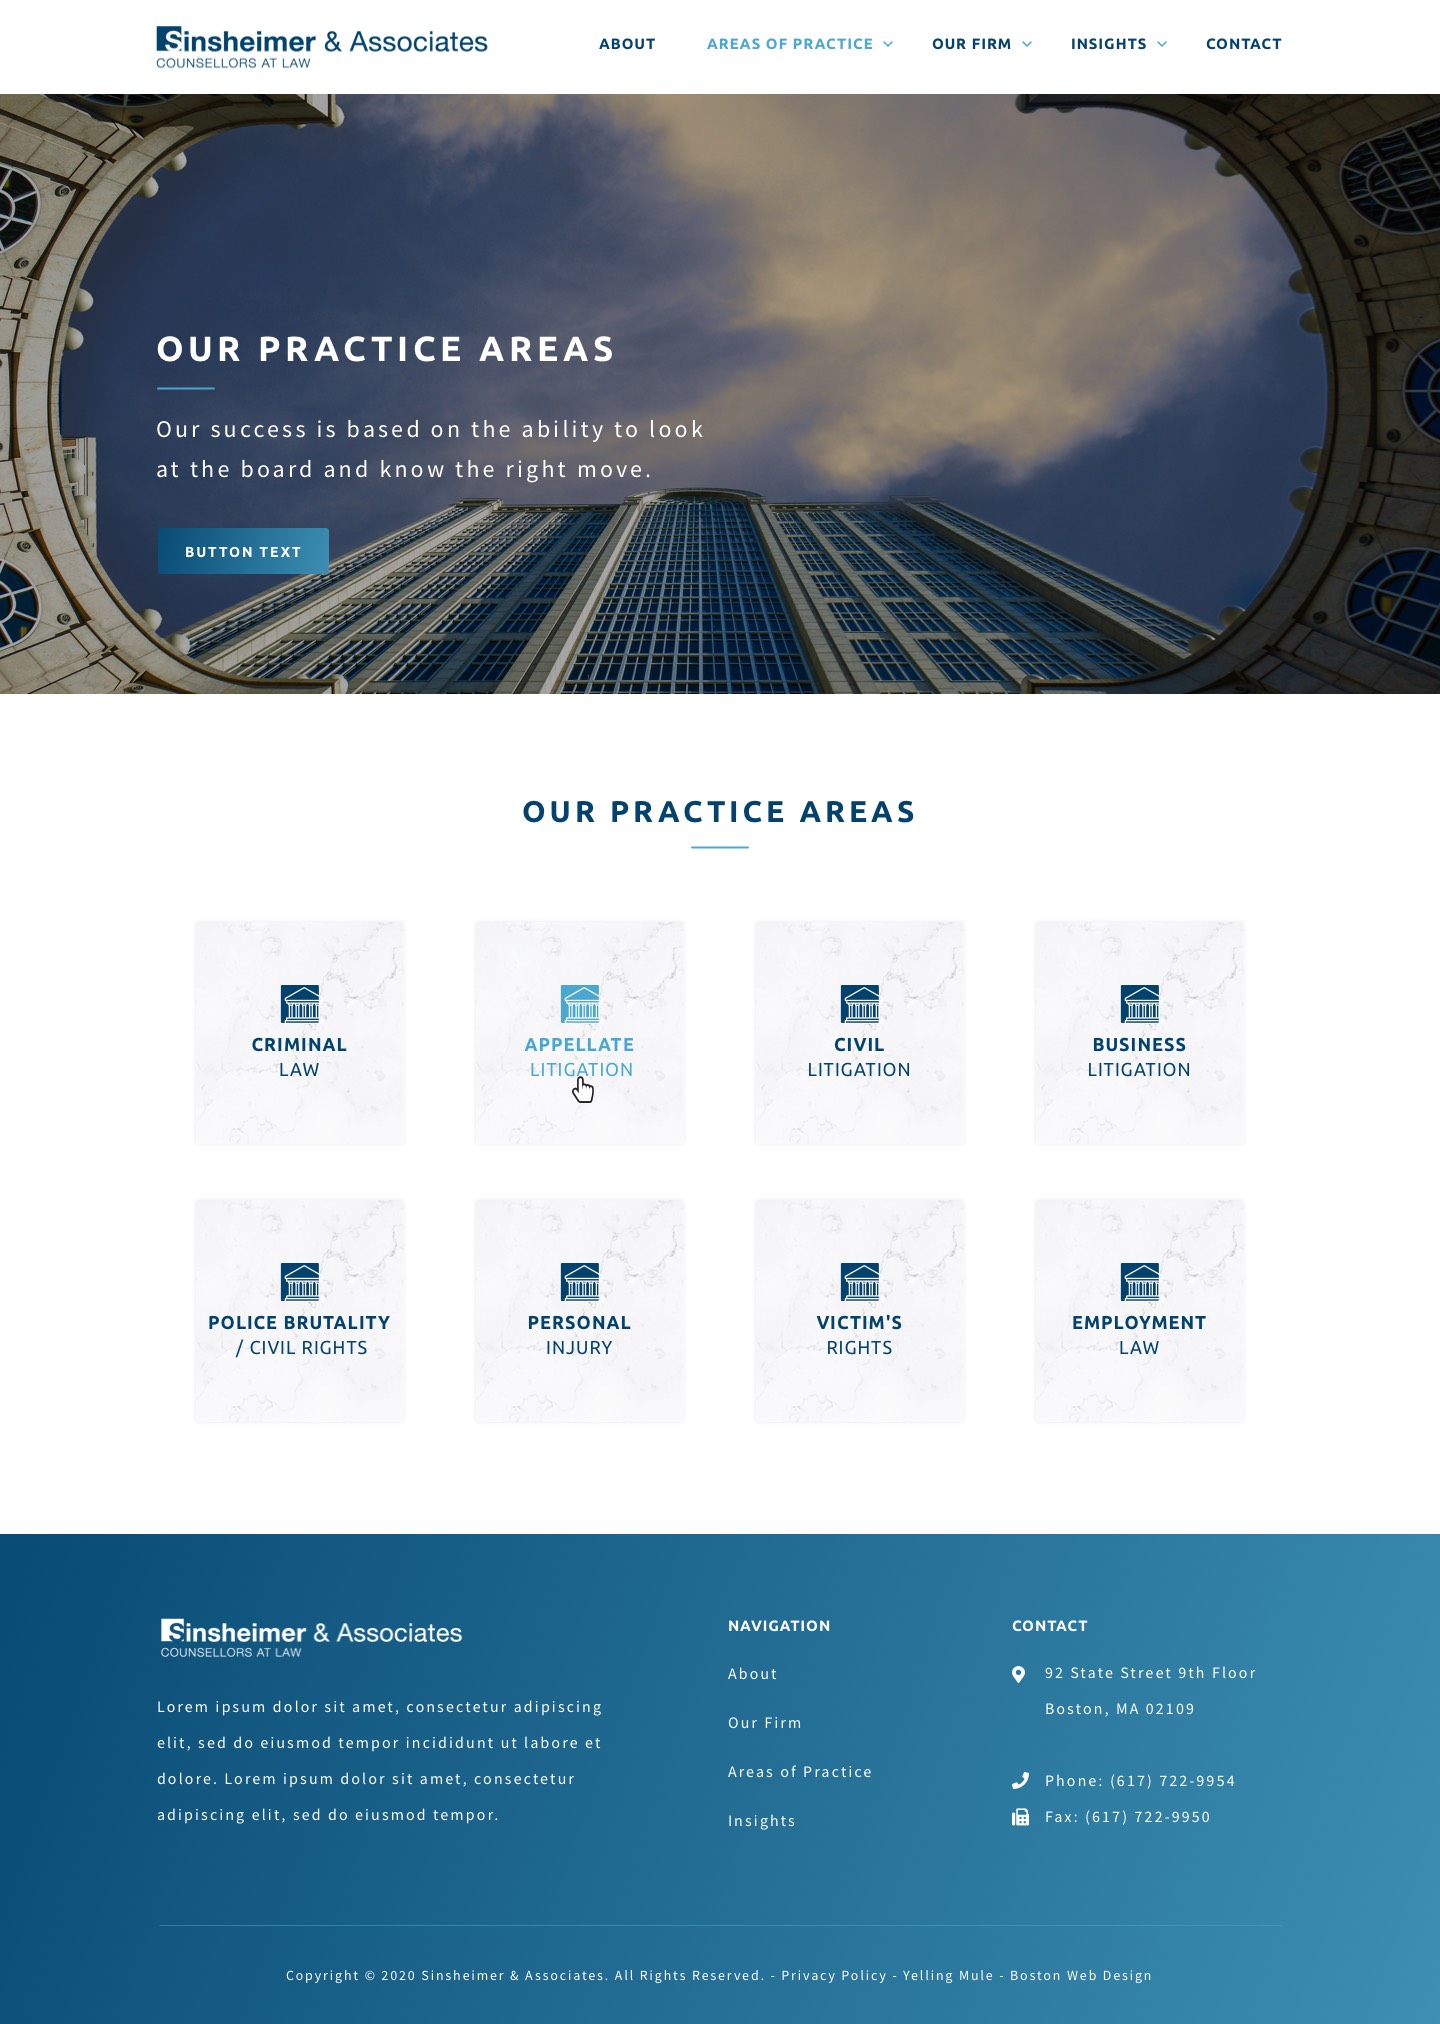 Sinsheimer & Associates Areas of Practice